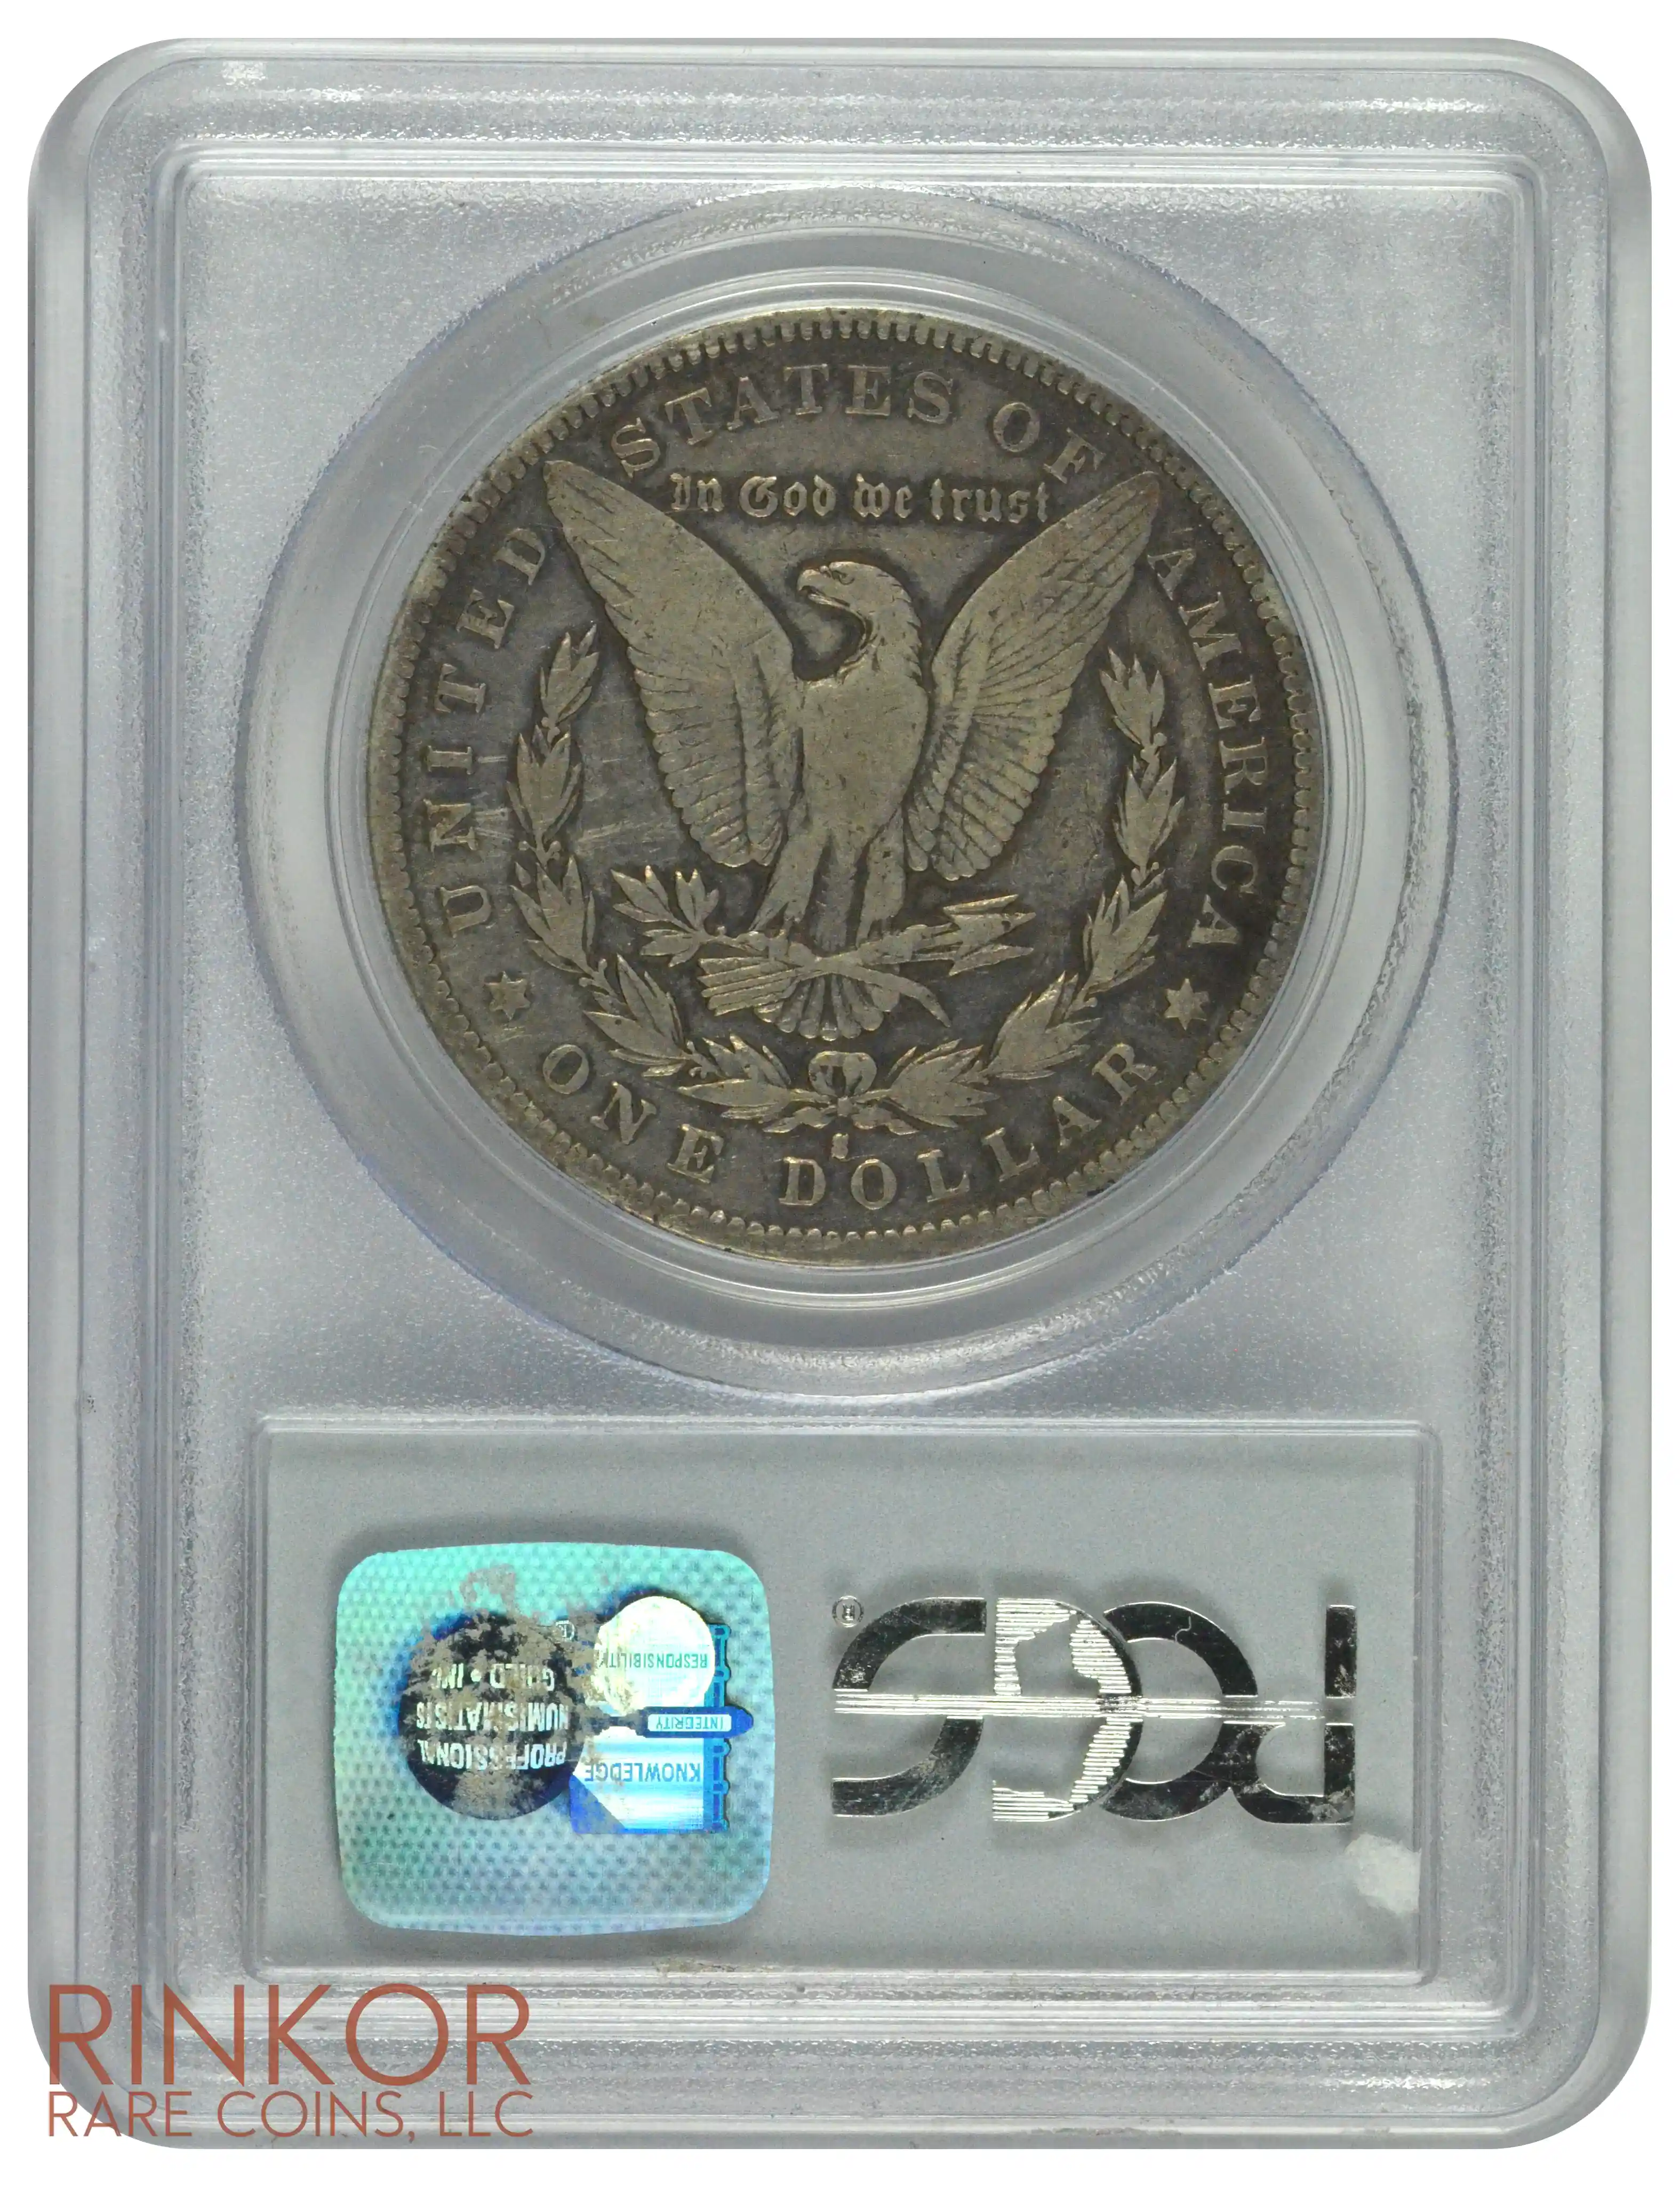 1893-S $1 PCGS VG-10